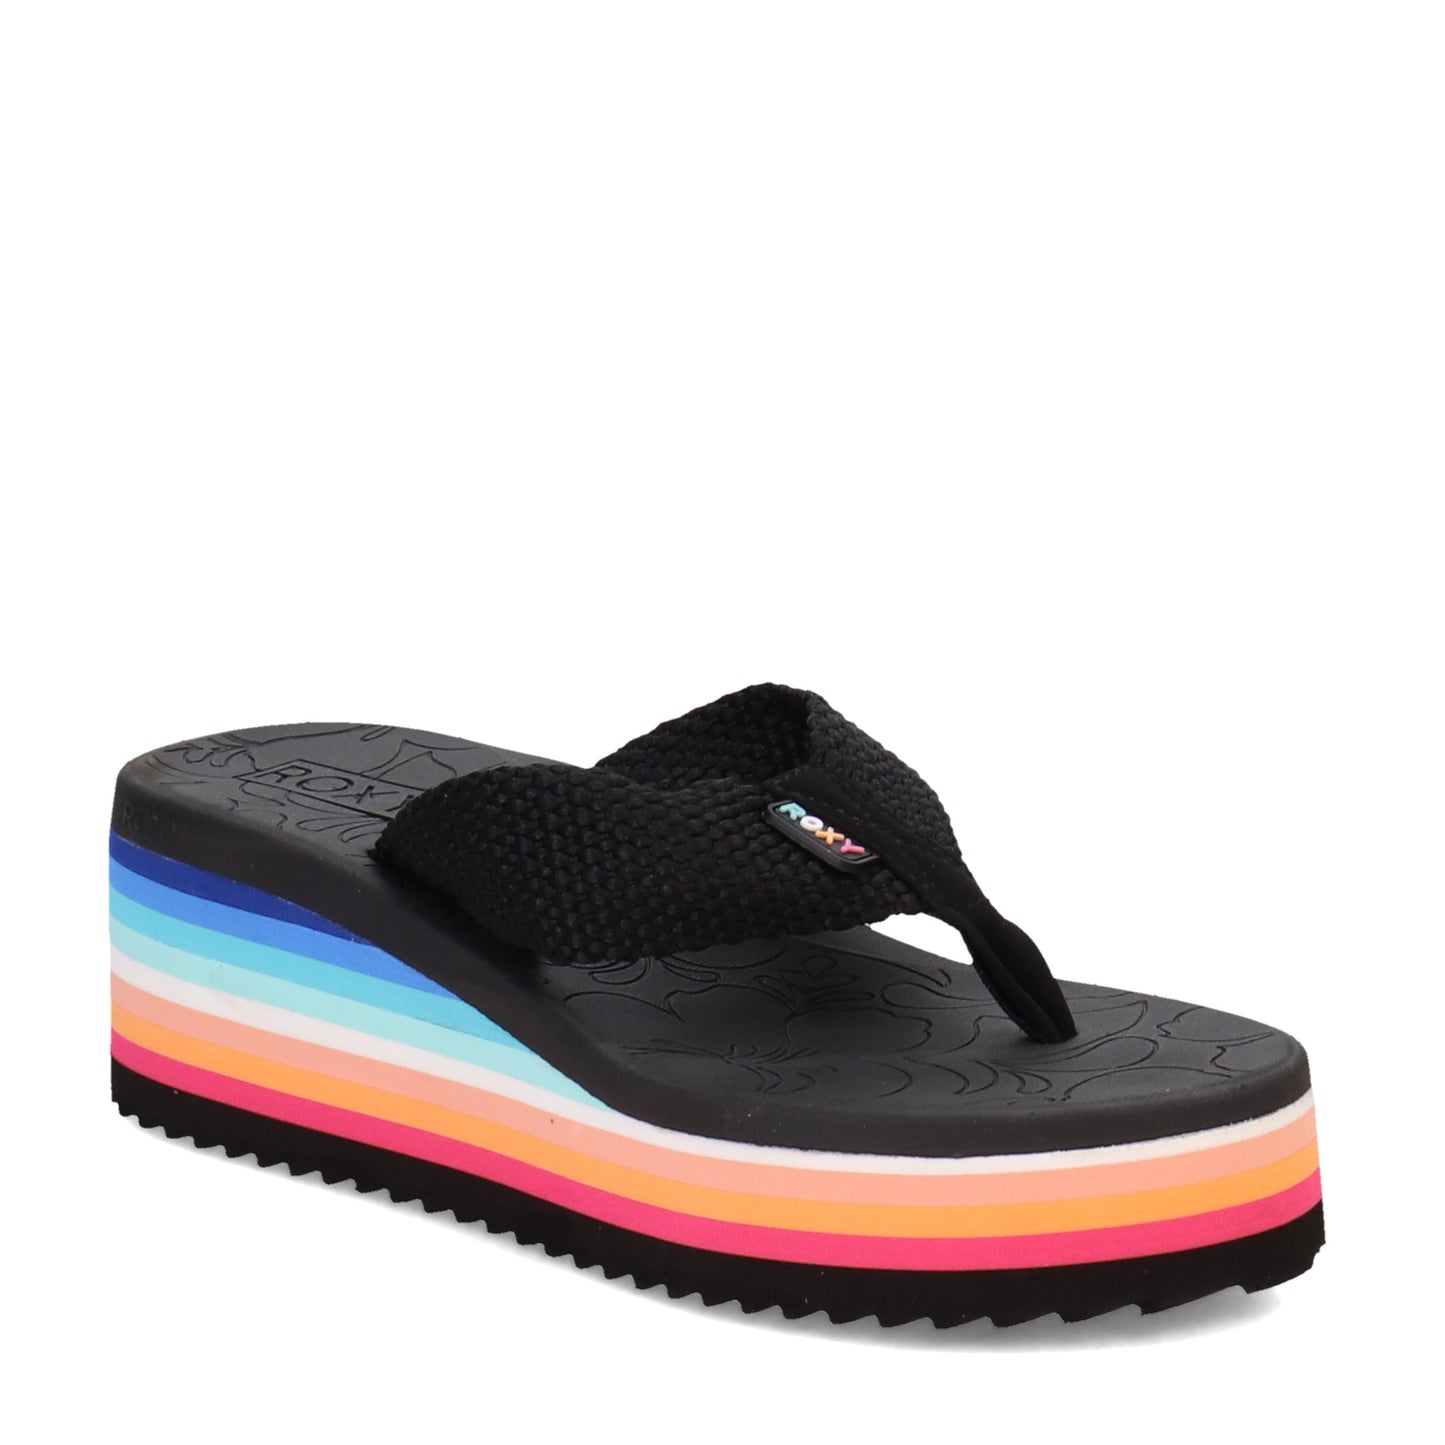 Peltz Shoes  Women's Roxy Kallie II Sandal MULTI FABRIC ARJL101073-MLT